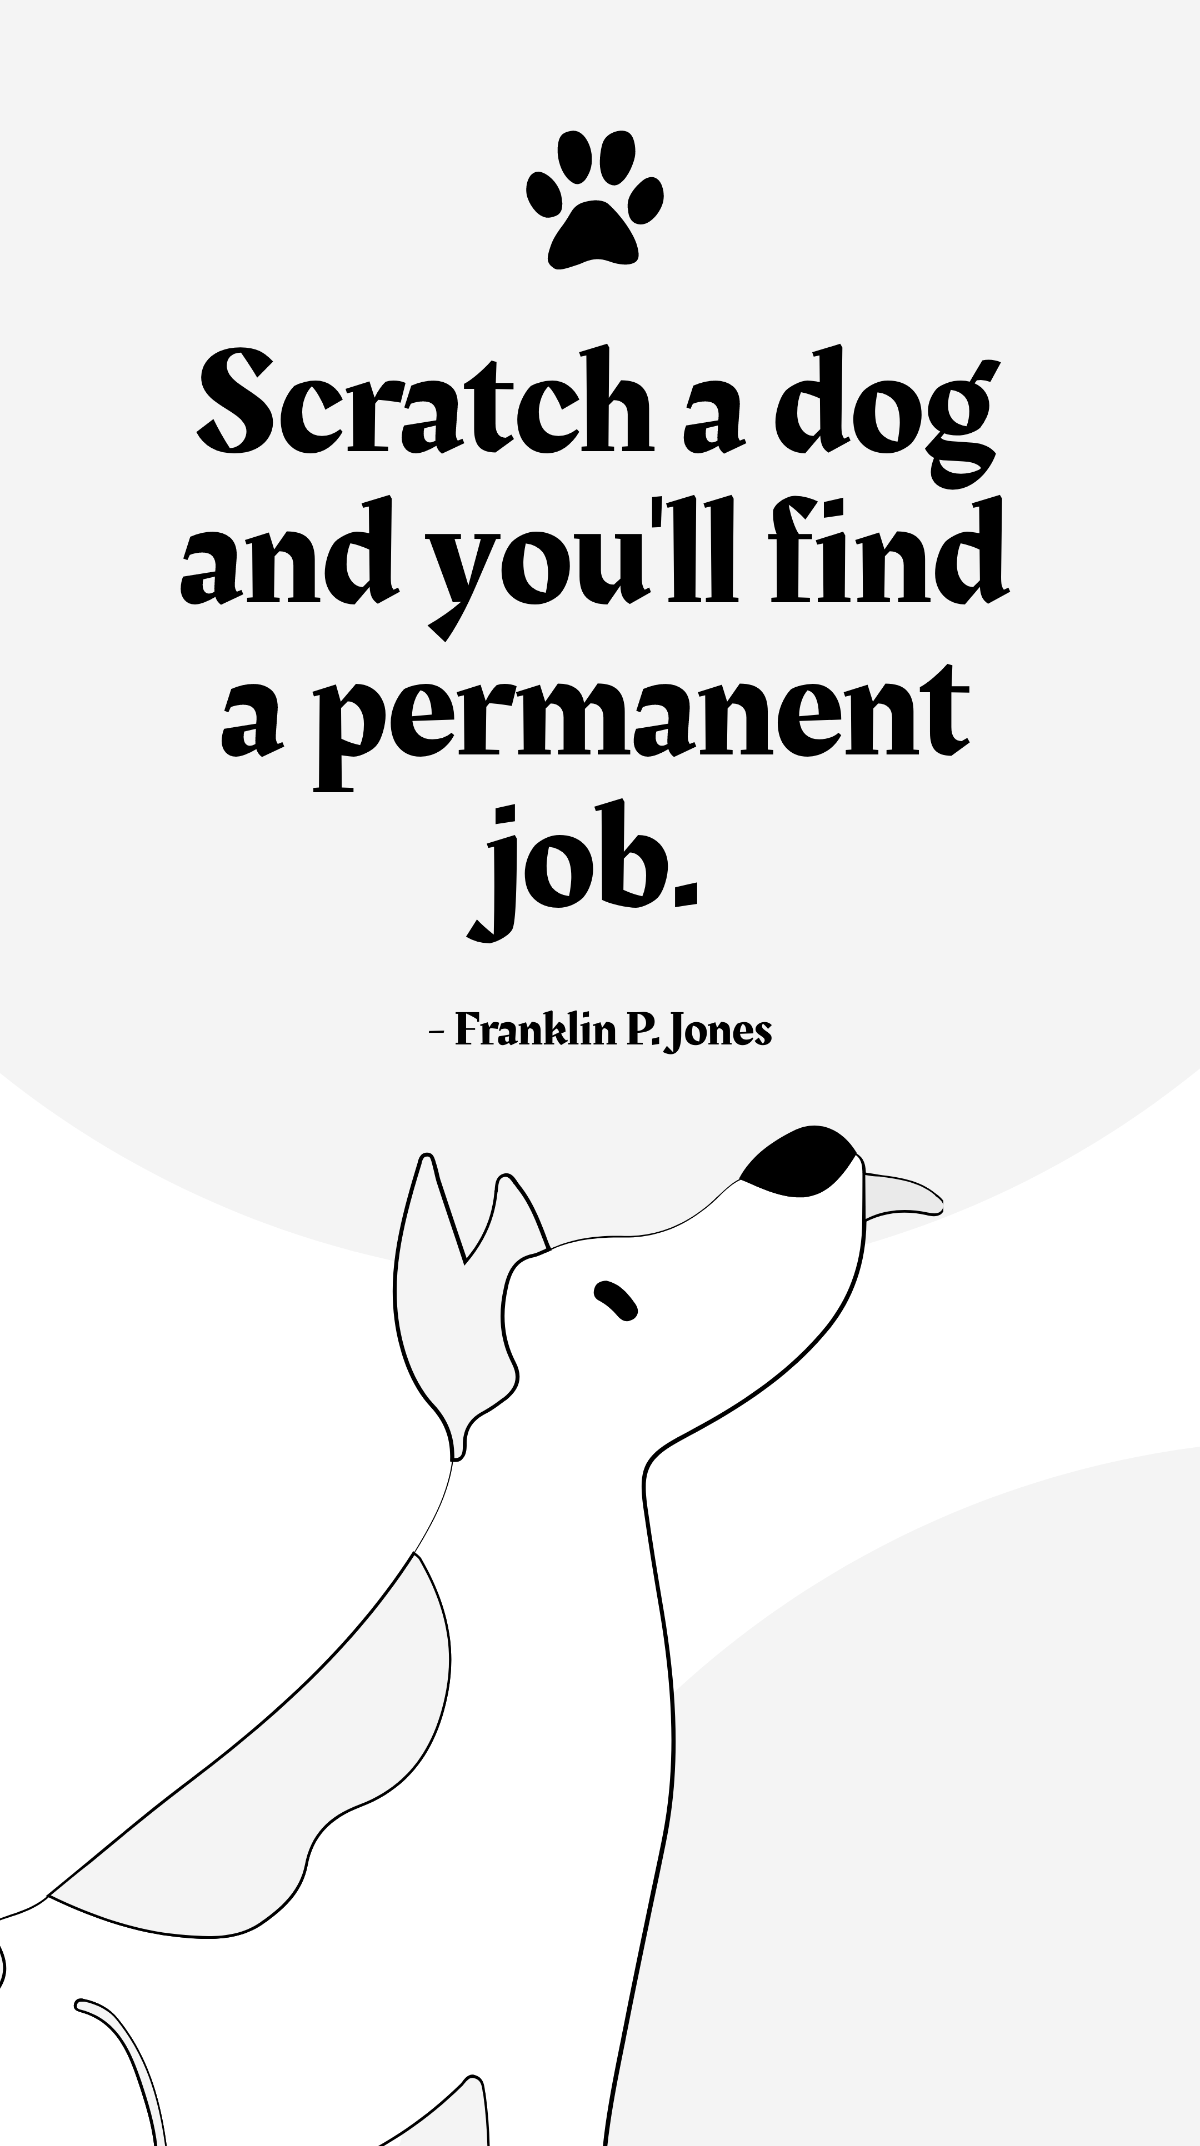 Franklin P. Jones - Scratch a dog and you'll find a permanent job.